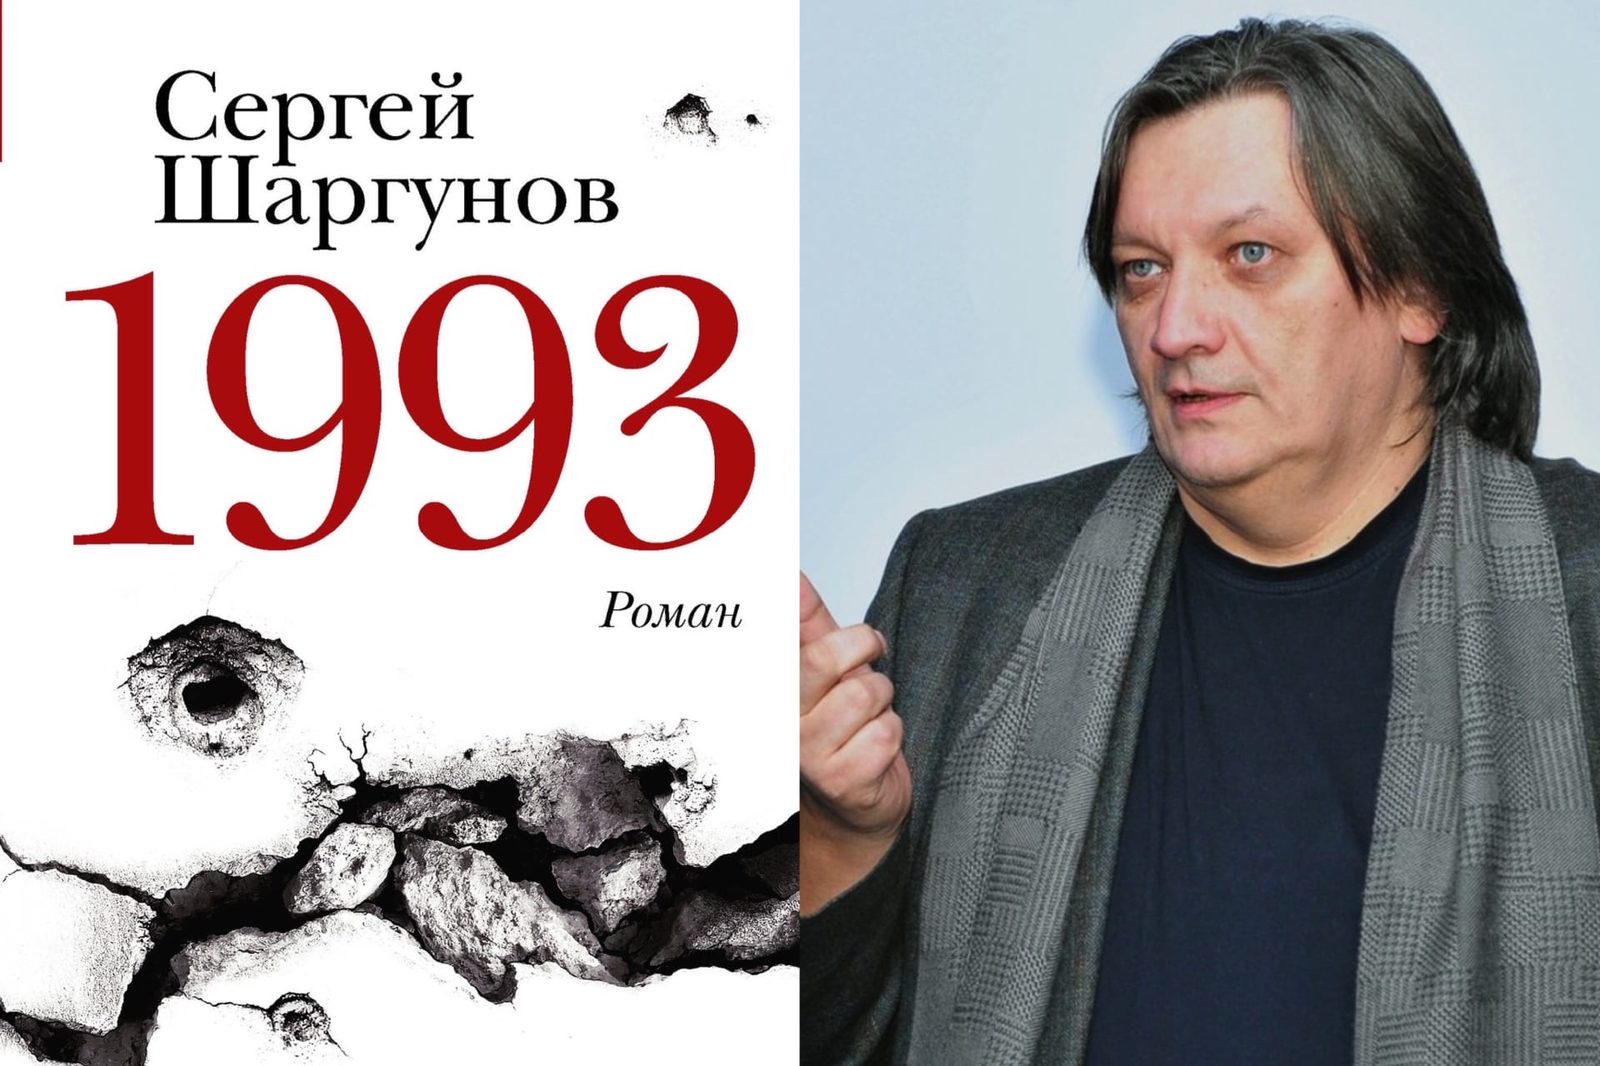 Александр Велединский экранизирует роман Сергея Шаргунова «1993»